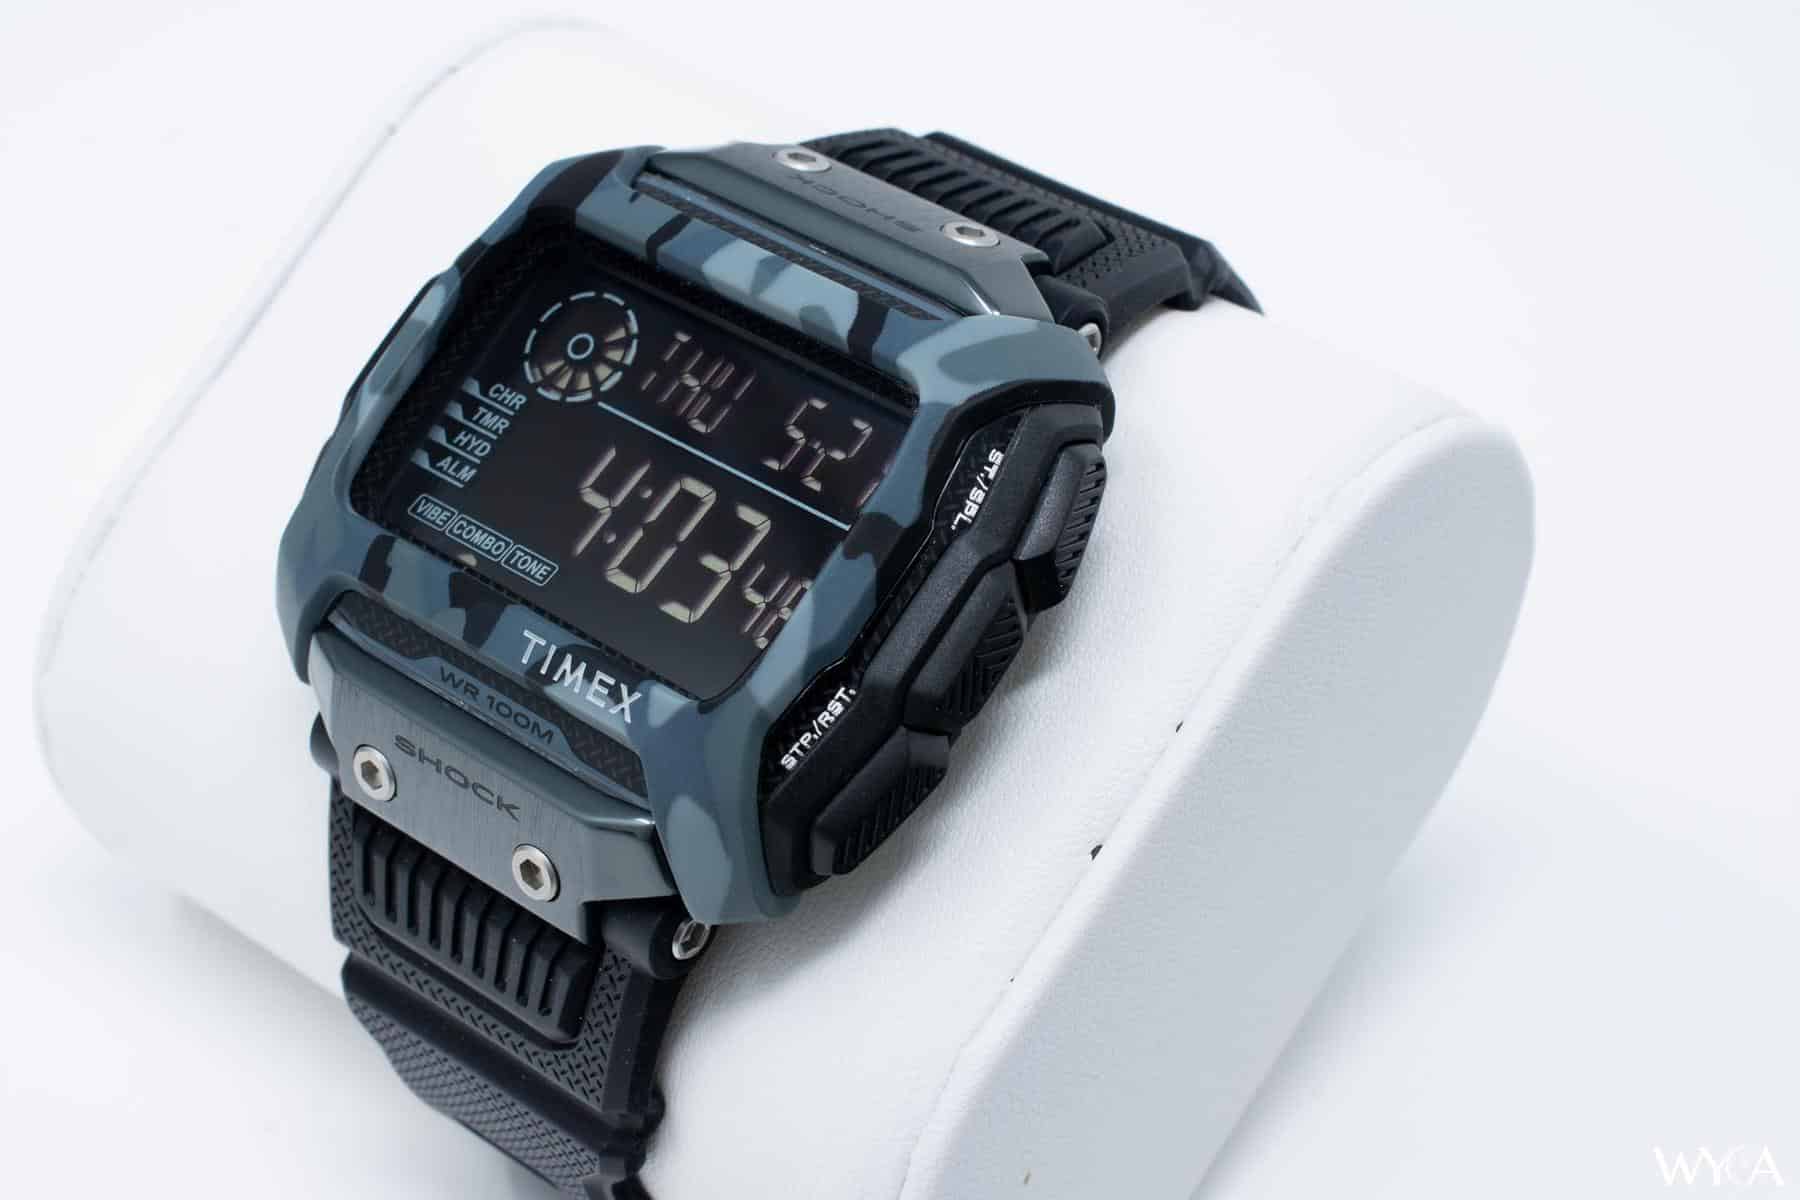 Timex Command Shock Digital Watch